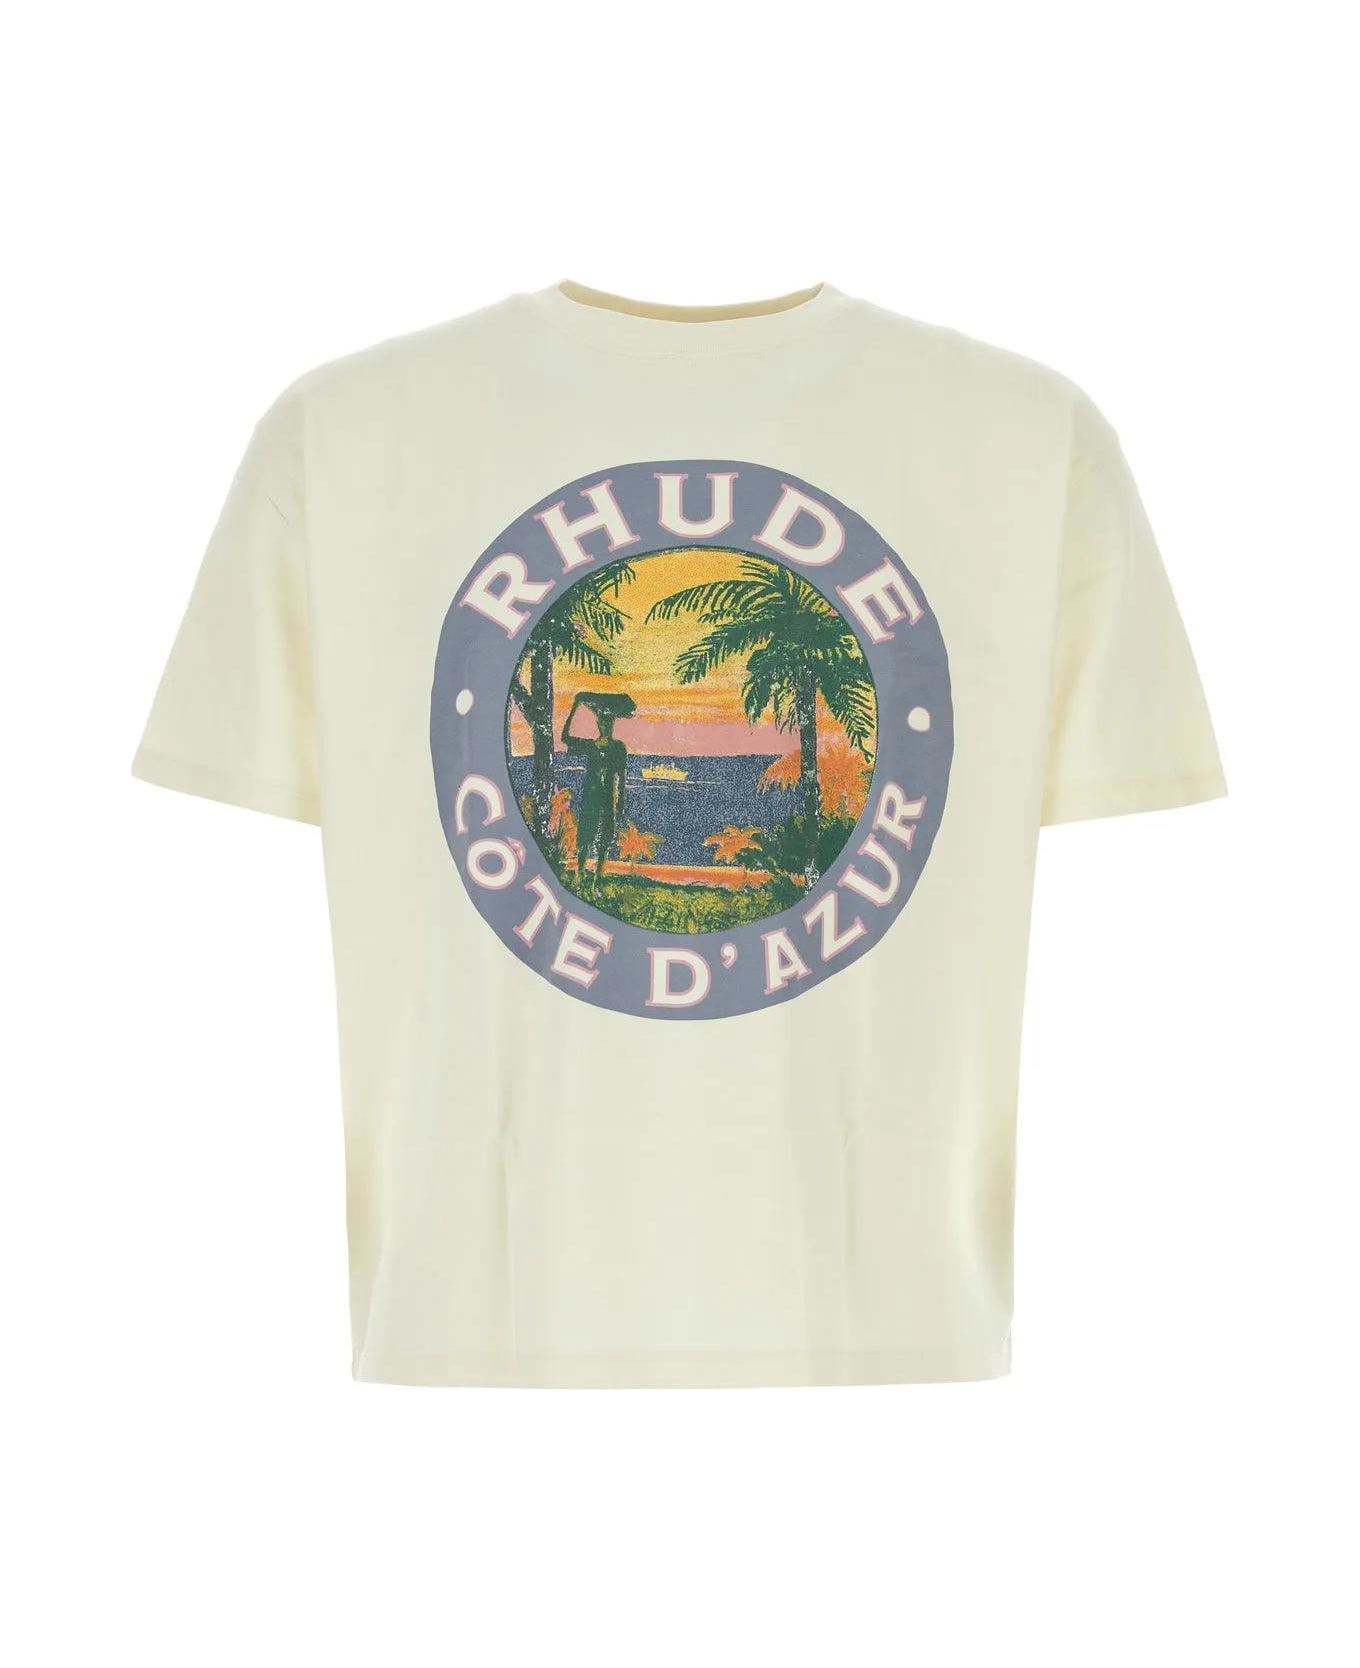 Rhude Sand Cotton Lago T-shirt - White シャツ